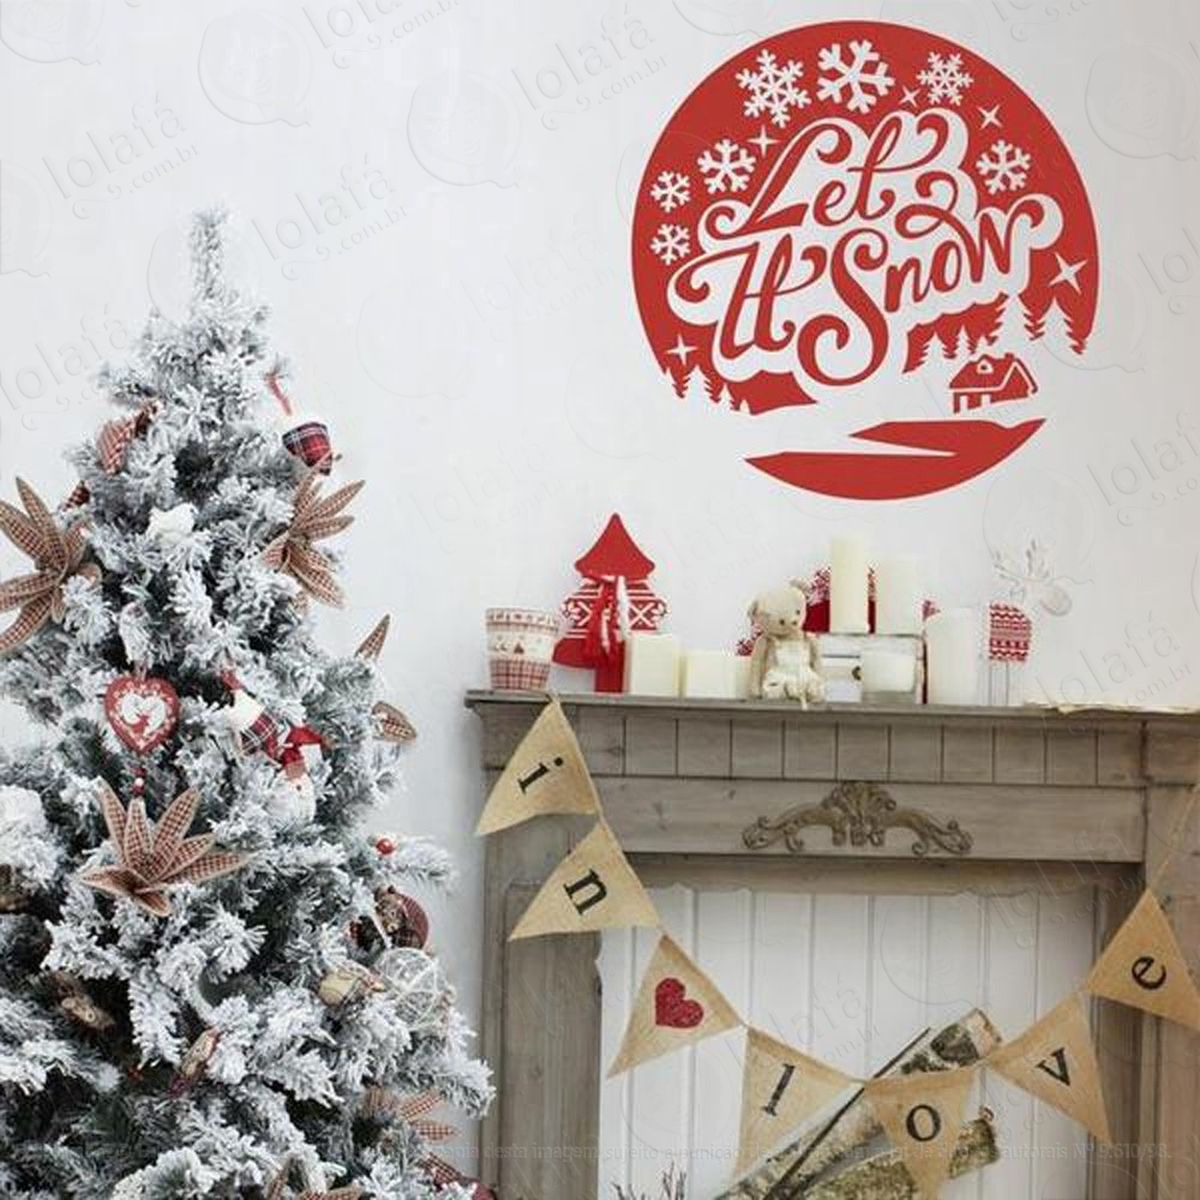 neve casa adesivo de natal para vitrine, parede, porta de vidro - decoração natalina mod:160